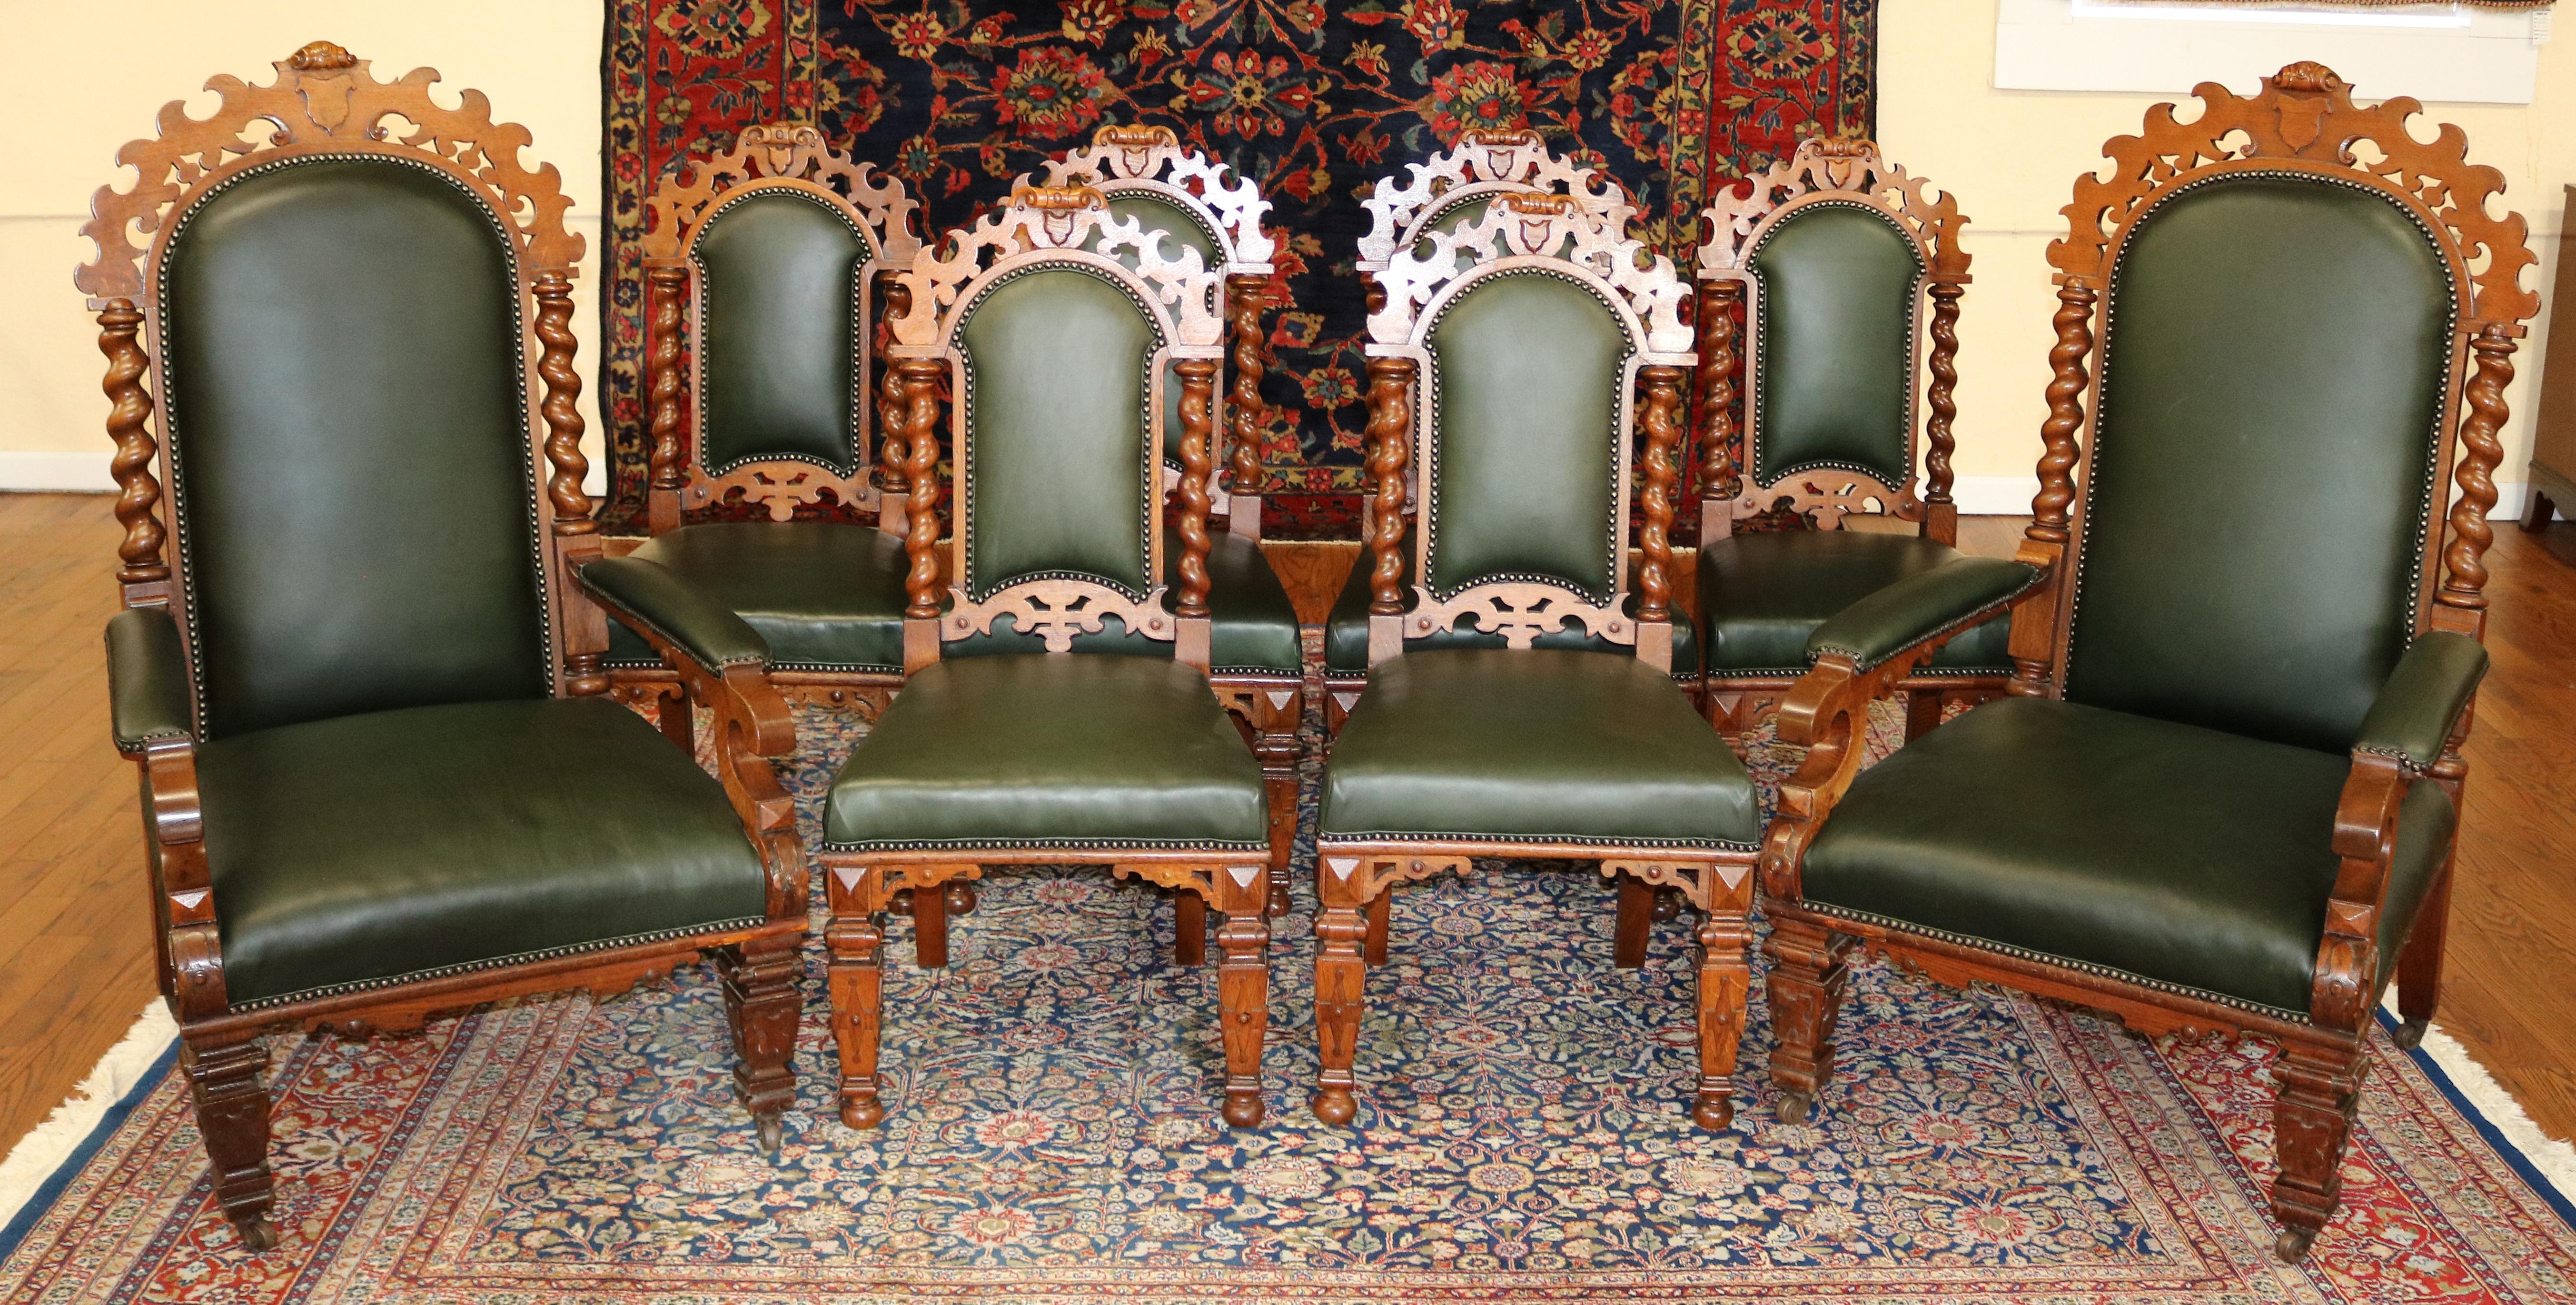 Satz von 8 viktorianischen Barley Twist-Esszimmerstühlen aus Eiche und grünem Leder aus dem 19. Jahrhundert

Abmessungen : Sessel - 49,25